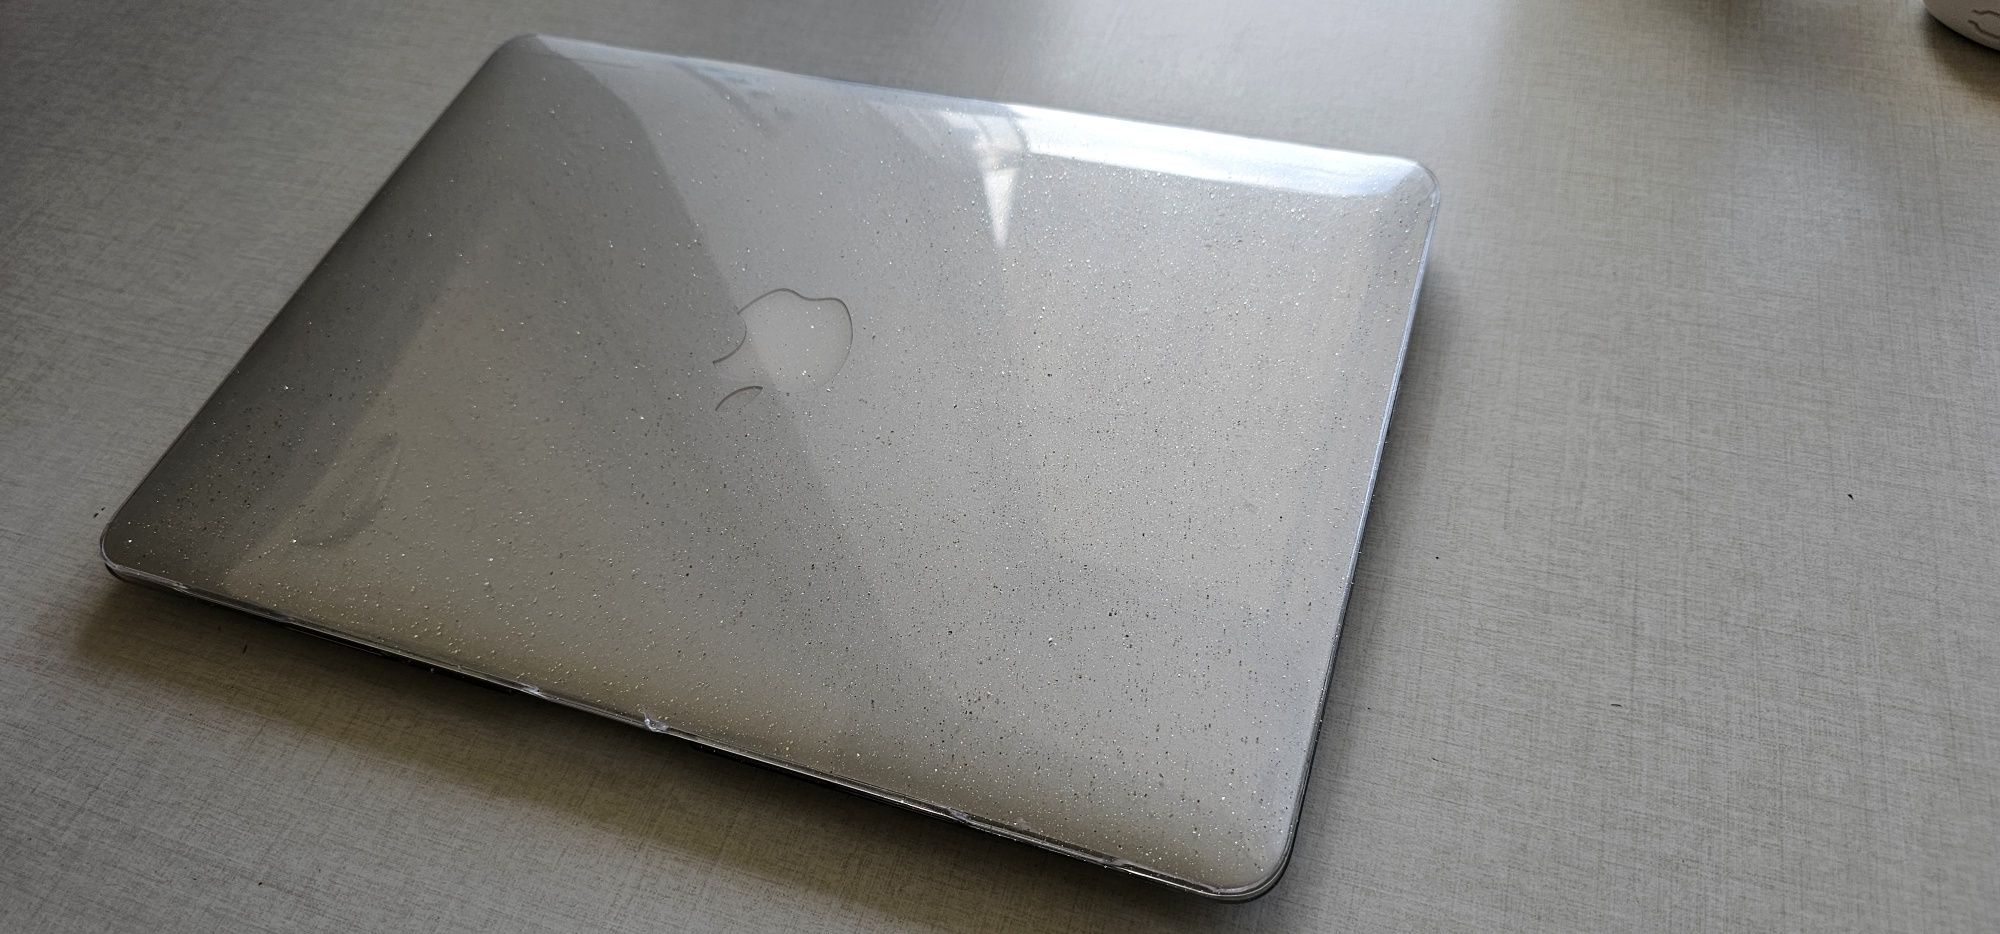 MacBook air 2015 4/128/805